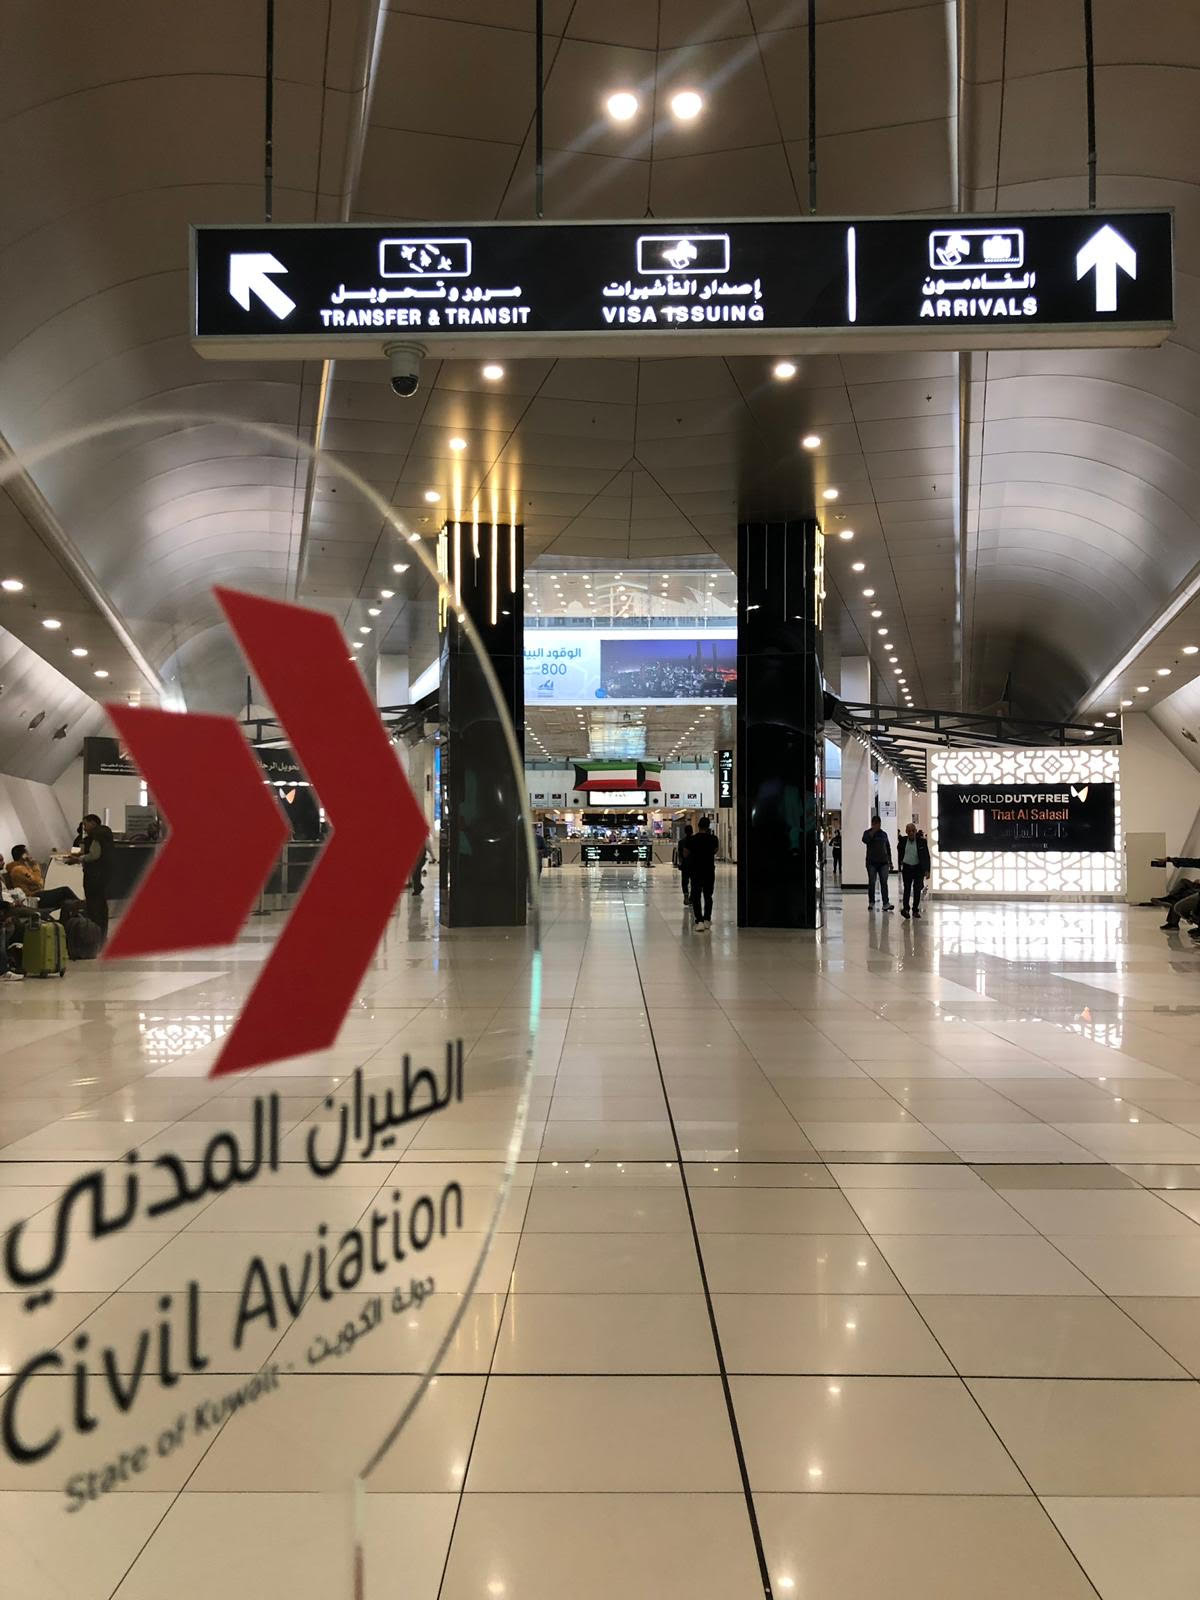  الطيران المدني: 40 شركة مُشغلة في مطار الكويت الدولي